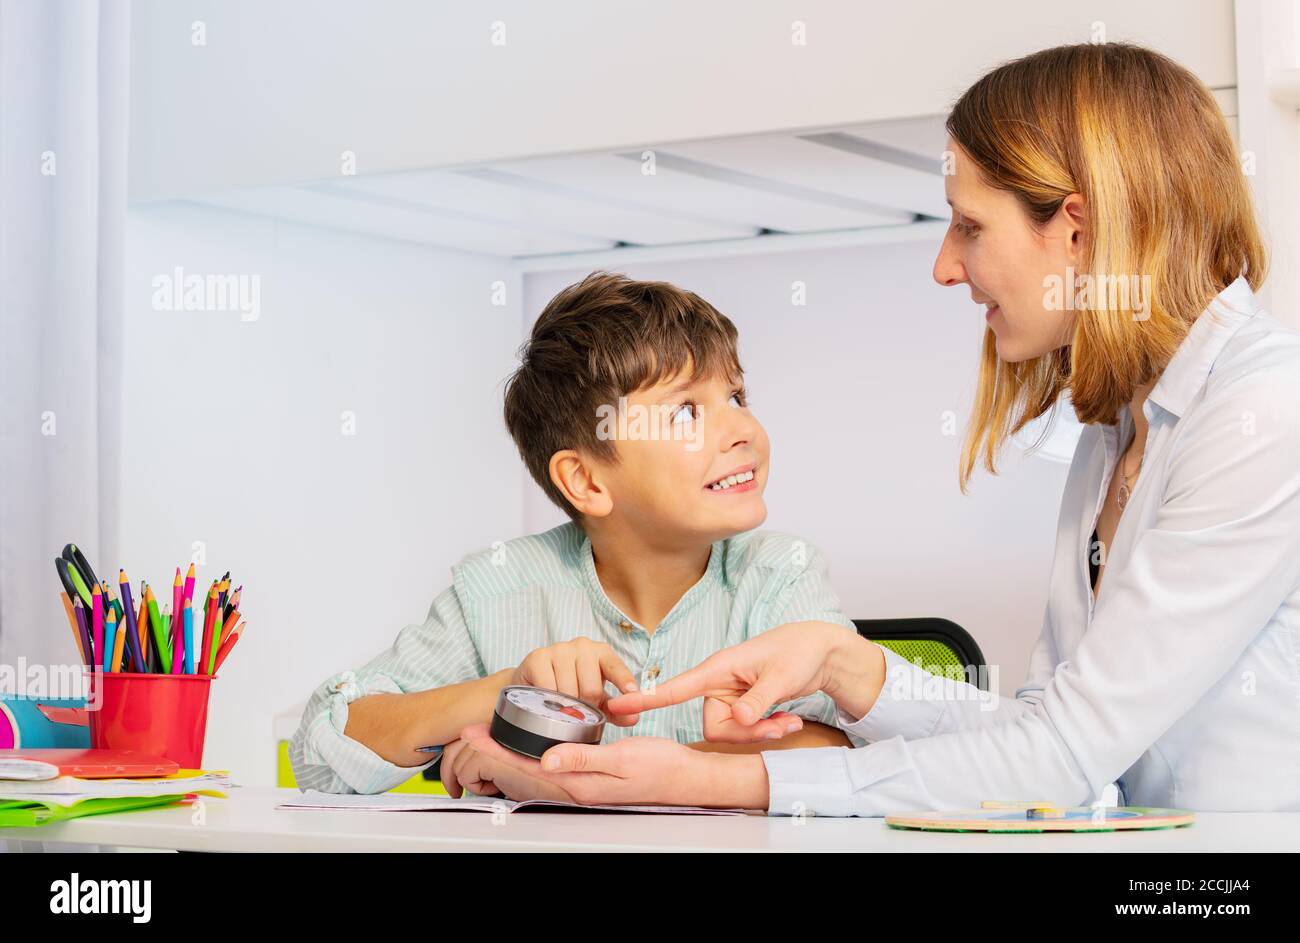 Autistischer Junge während der ABA-Therapie Blick auf Lehrer zeigt auf Stundenzähler Lernen, um Klassenverfahren zu erlernen und Zeit zu verstehen Konzept Stockfoto